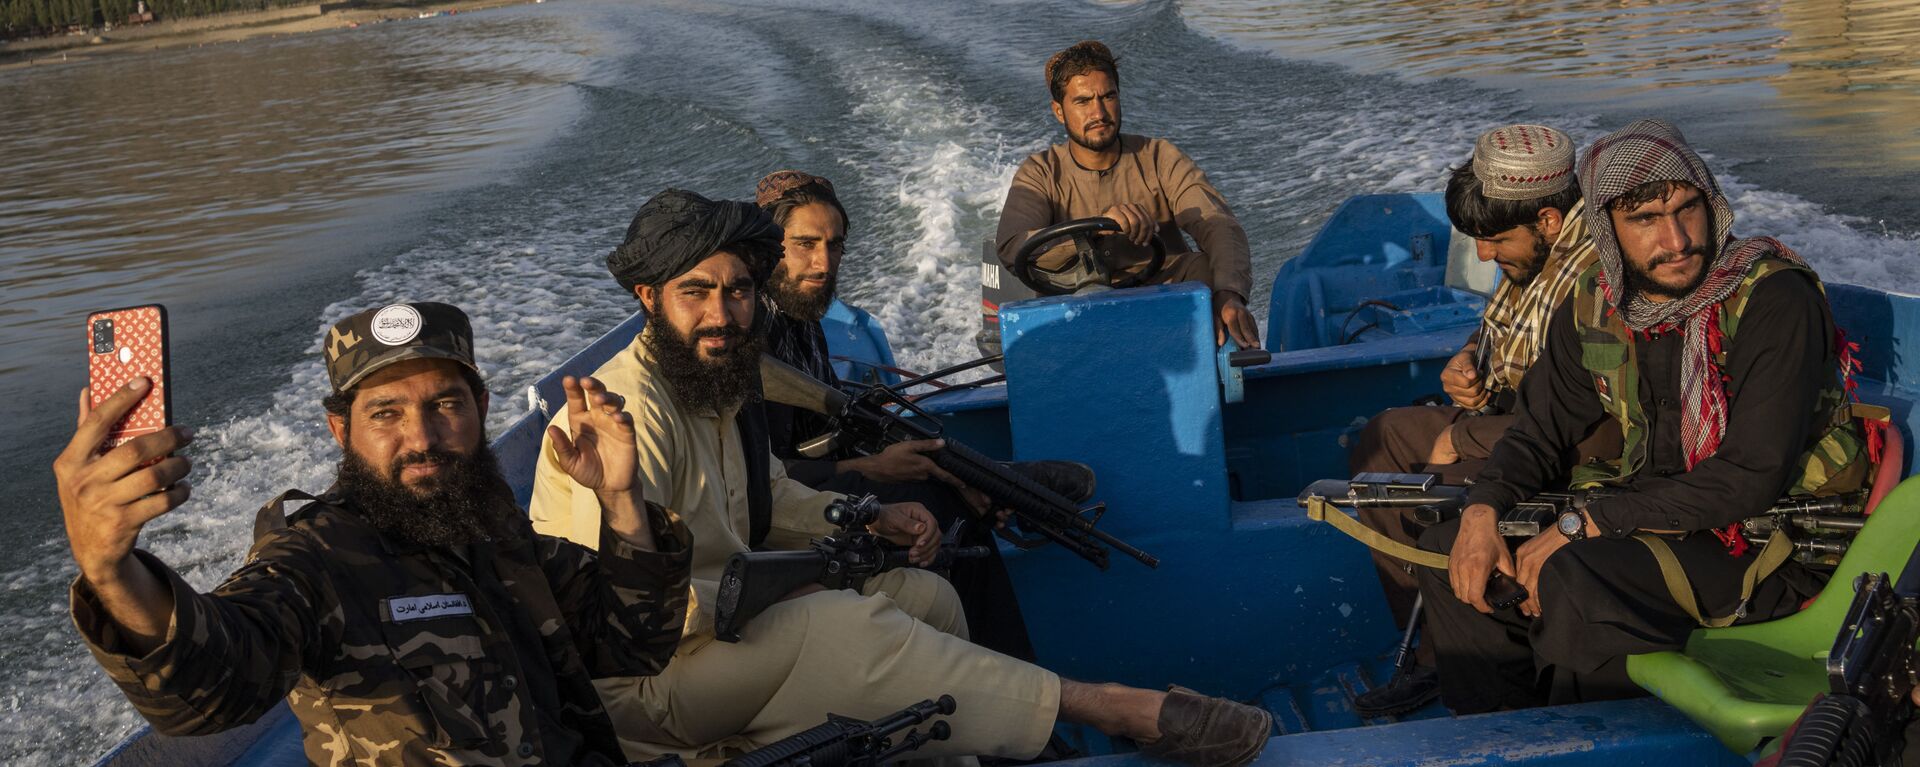 Бойцы Талибана наслаждаются прогулкой на лодке по плотине Карга, Афганистан - Sputnik Узбекистан, 1920, 19.11.2021